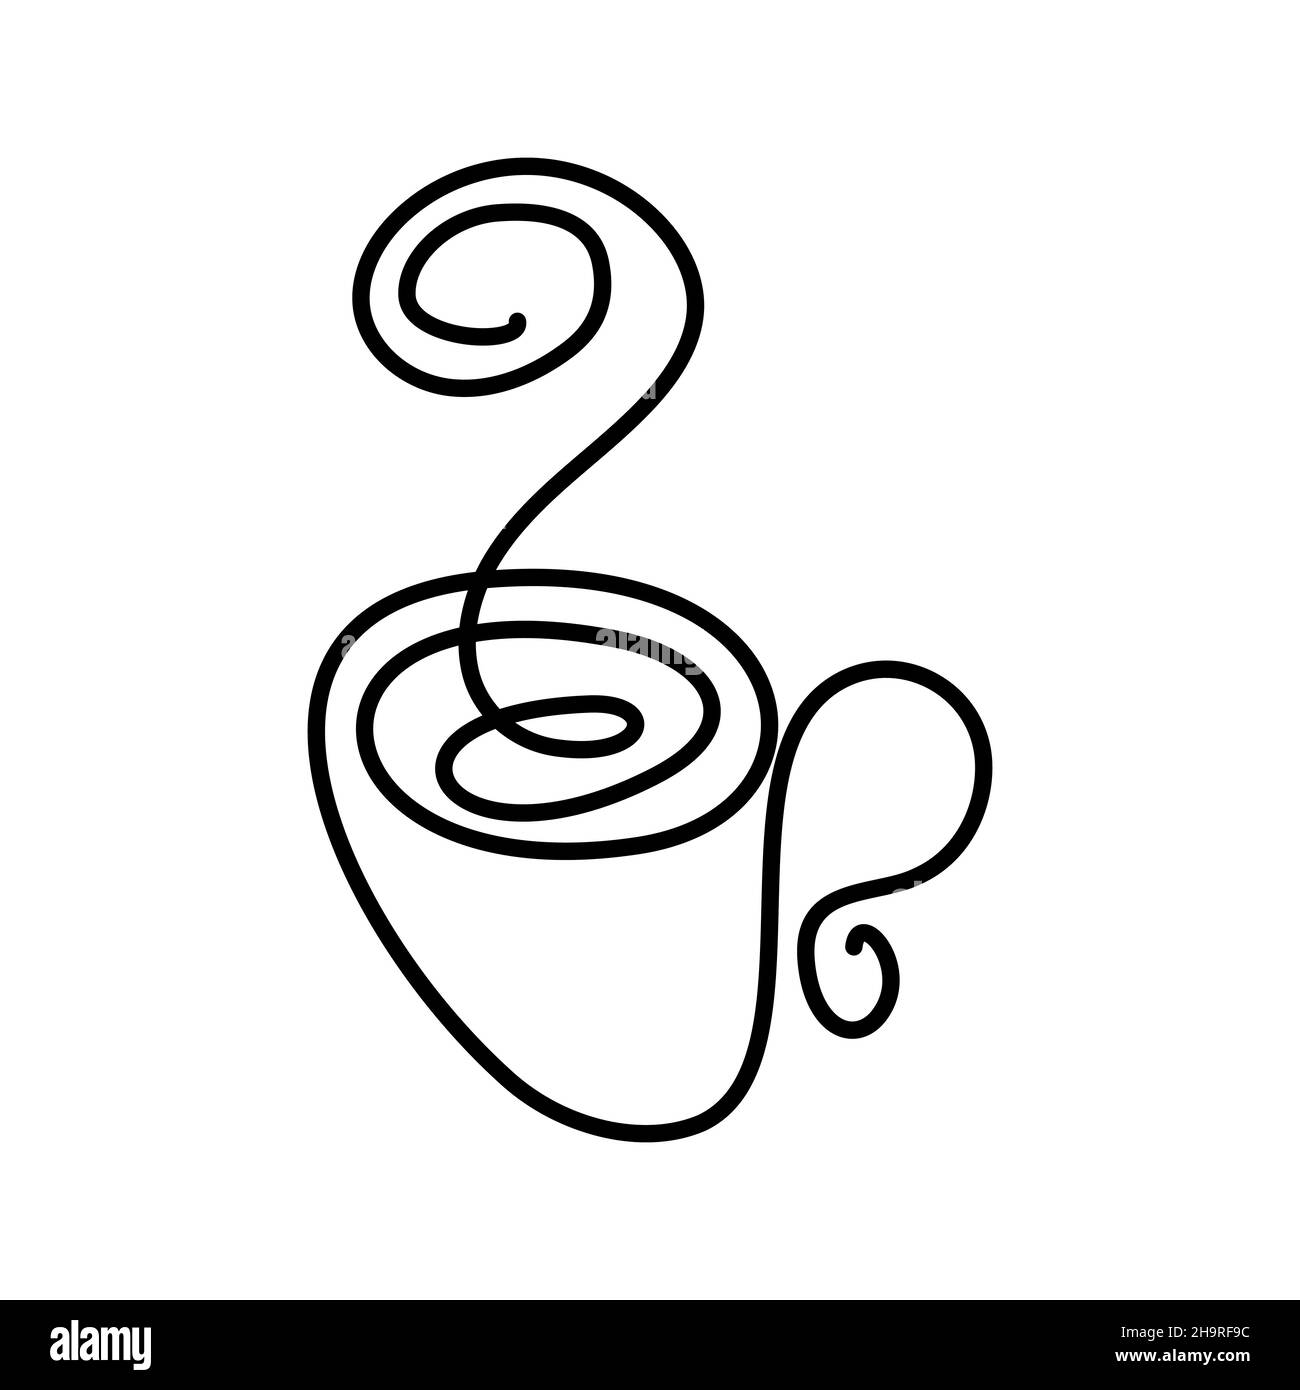 Konturzeichnung eines minimalistischen Bechers mit einer durchgehenden Linie. Von Hand gezeichnet. Das Bild für das Design auf Stoff und Serviette des Café- und Restaurantmenüs. Vektorgrafiken. Vektorgrafik Stock Vektor